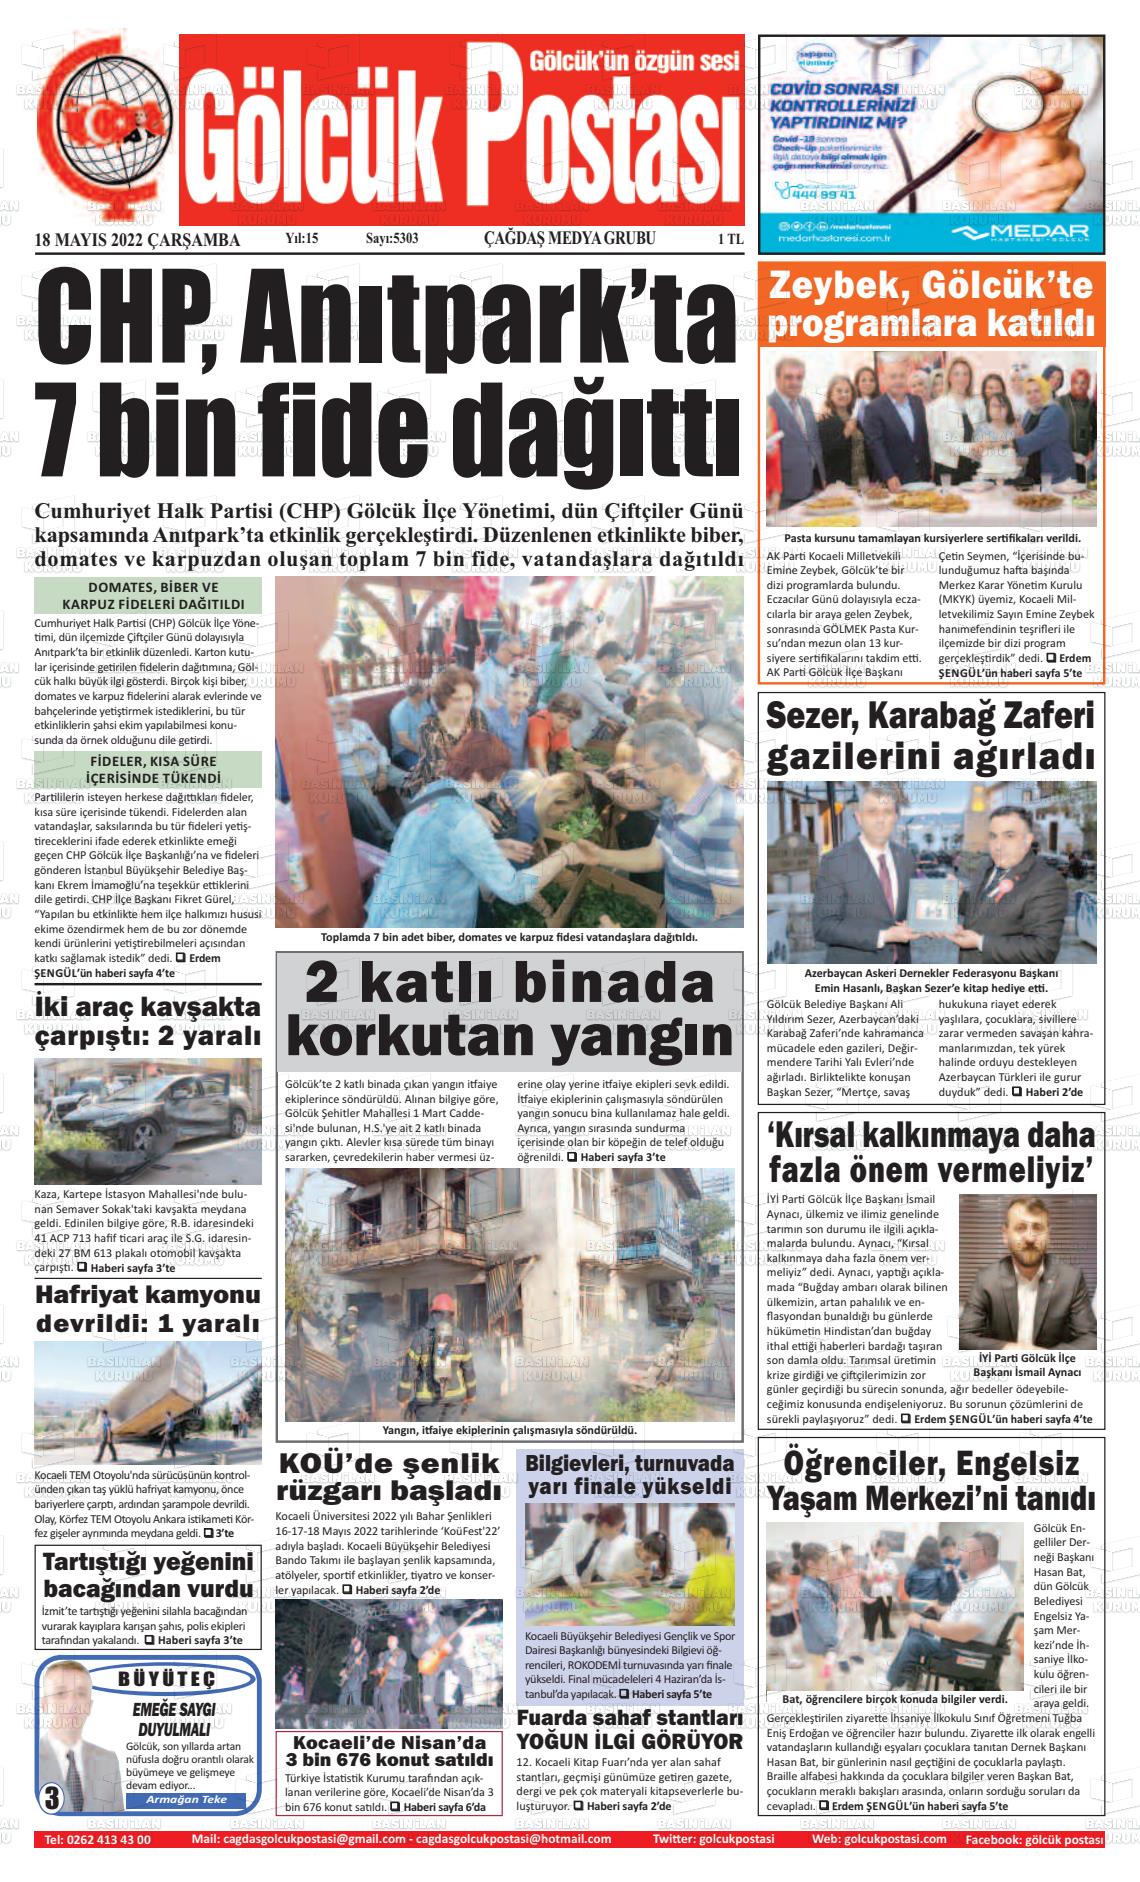 18 Mayıs 2022 Gölcük Postasi Gazete Manşeti